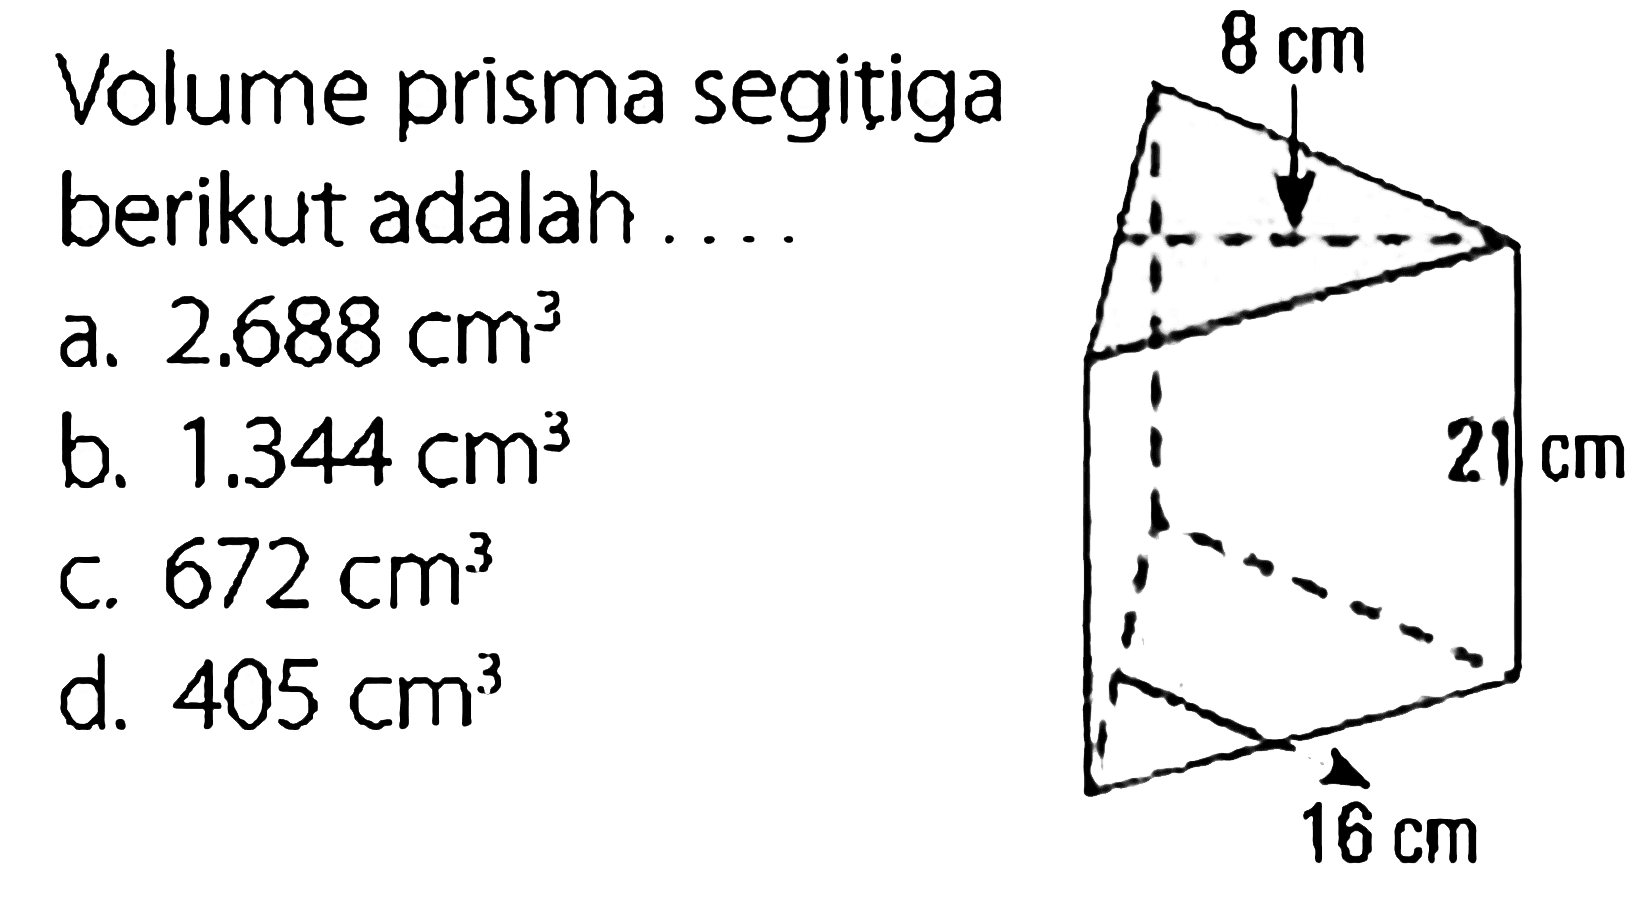 Volume prisma segitiga berikut adalah ....